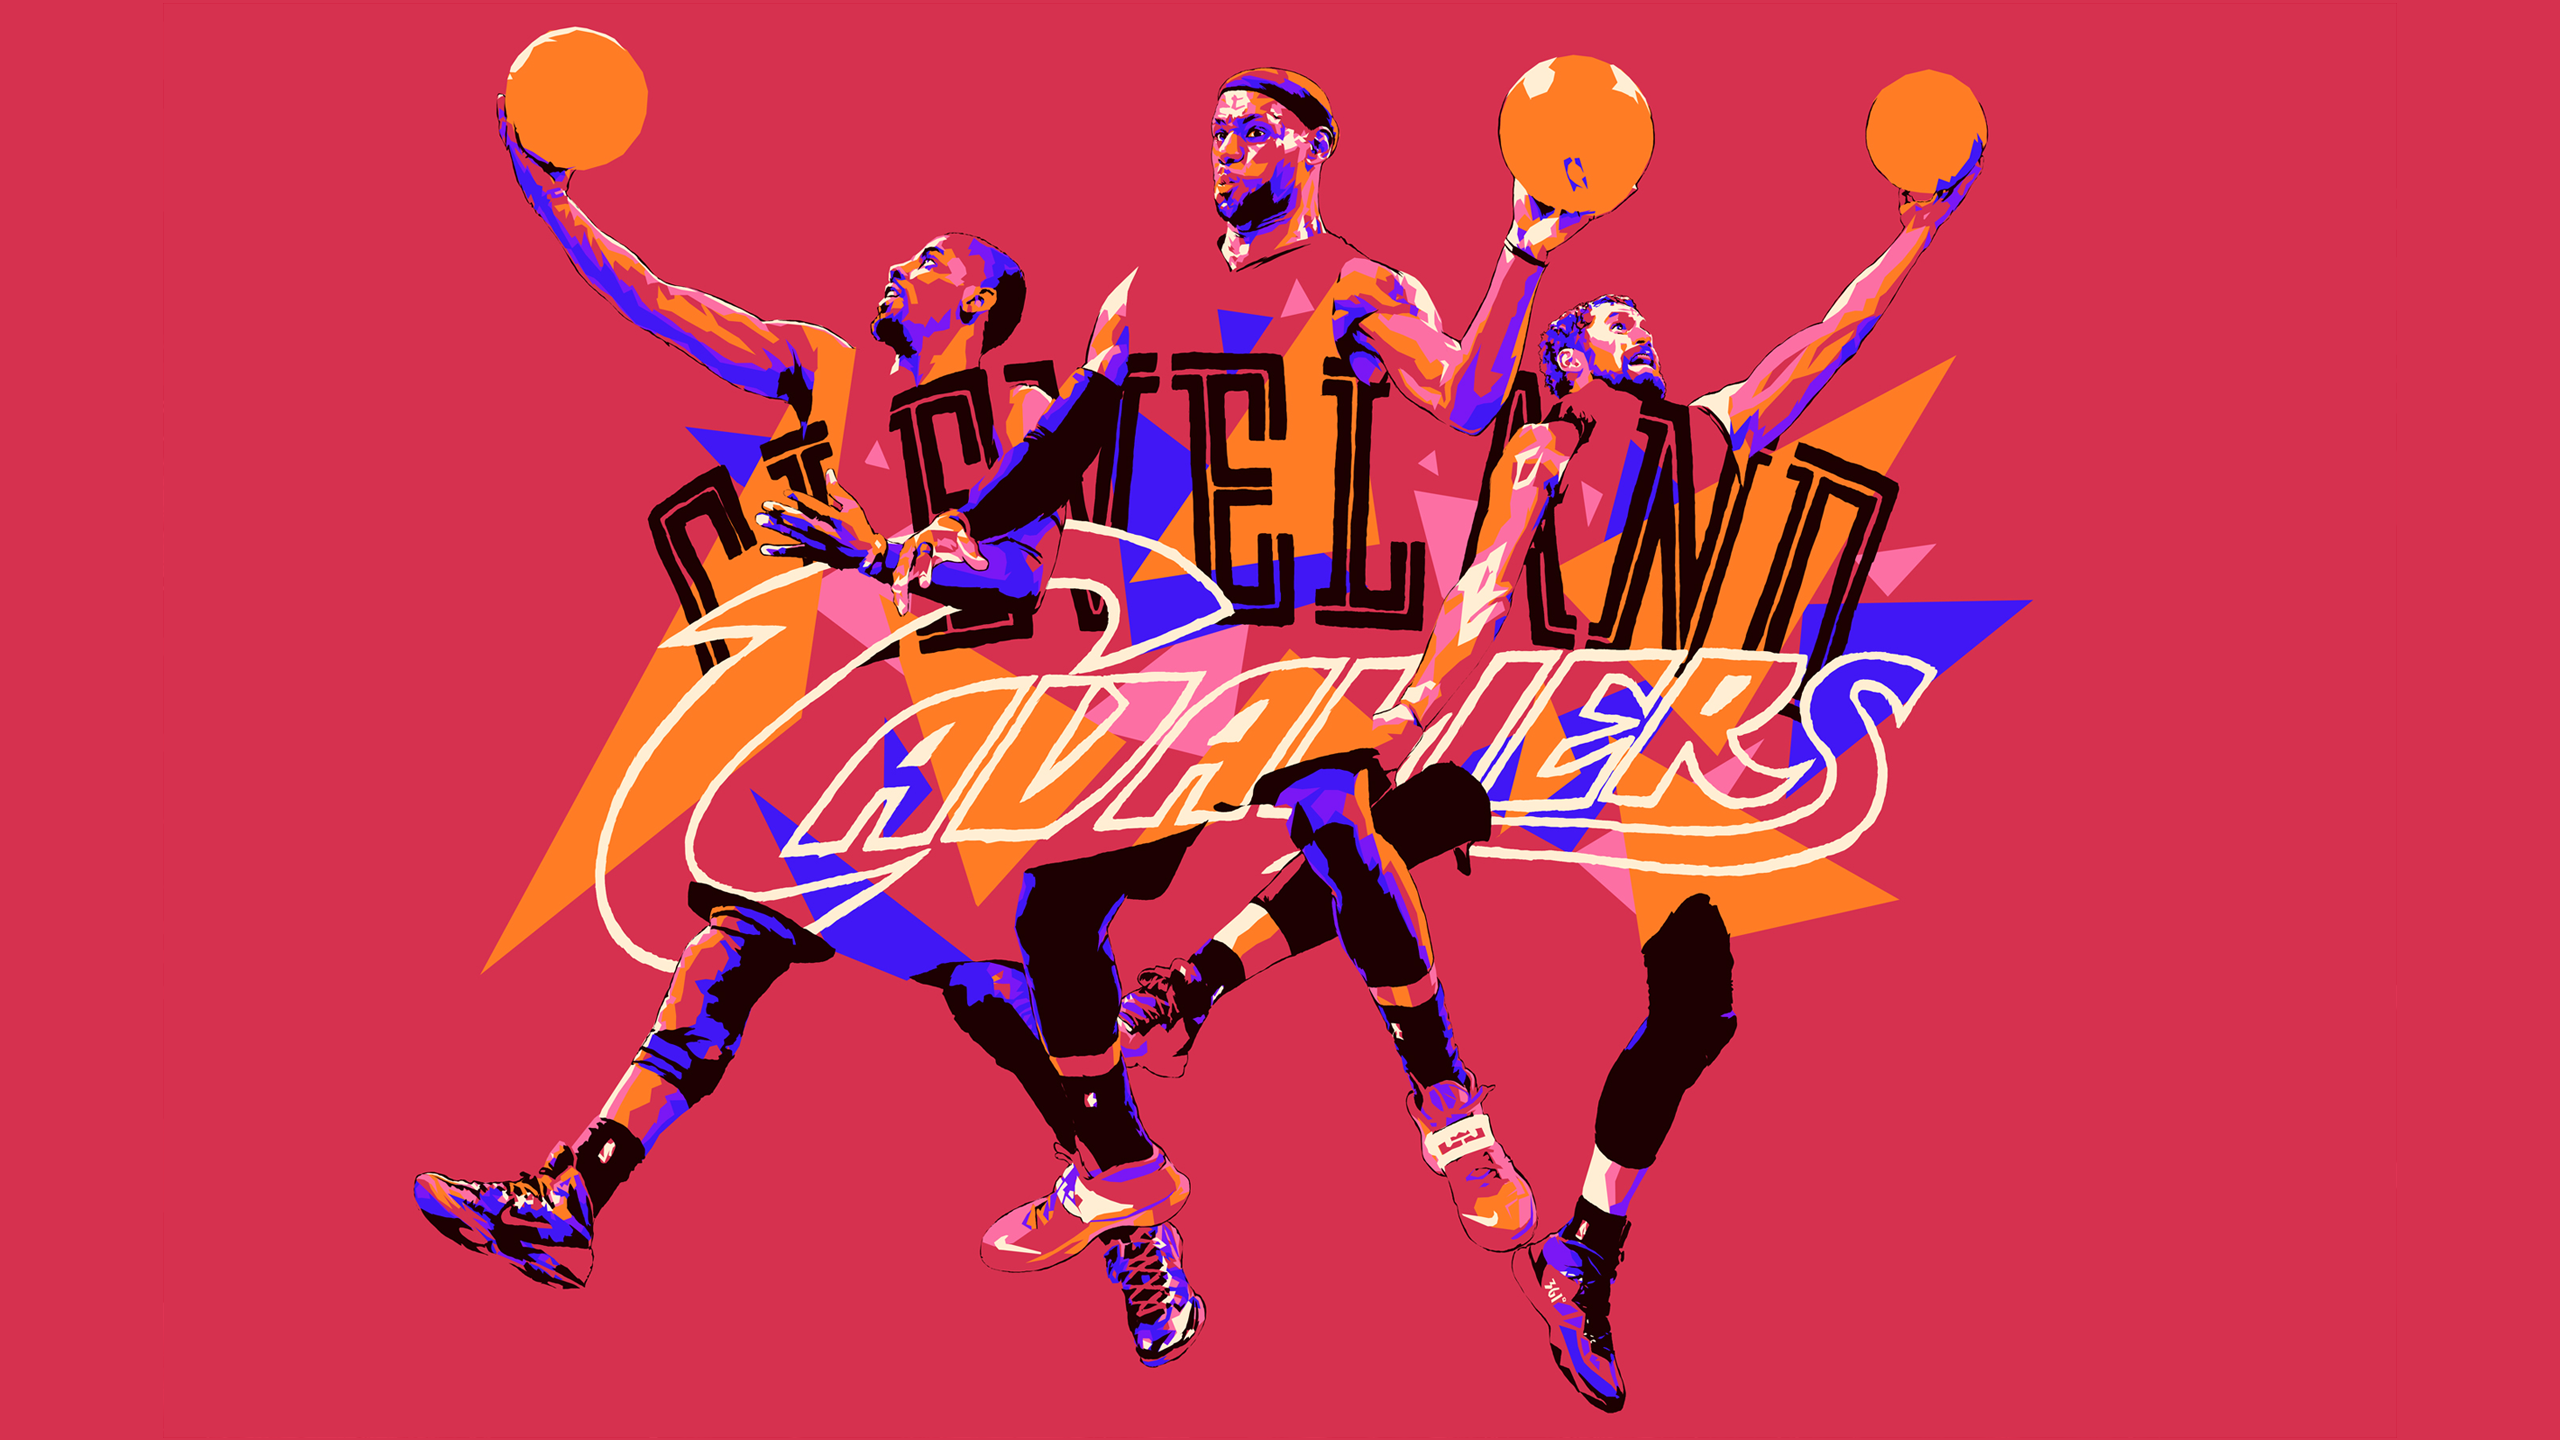 Free download Fan Wallpaper Cleveland Cavaliers [2560x1440]